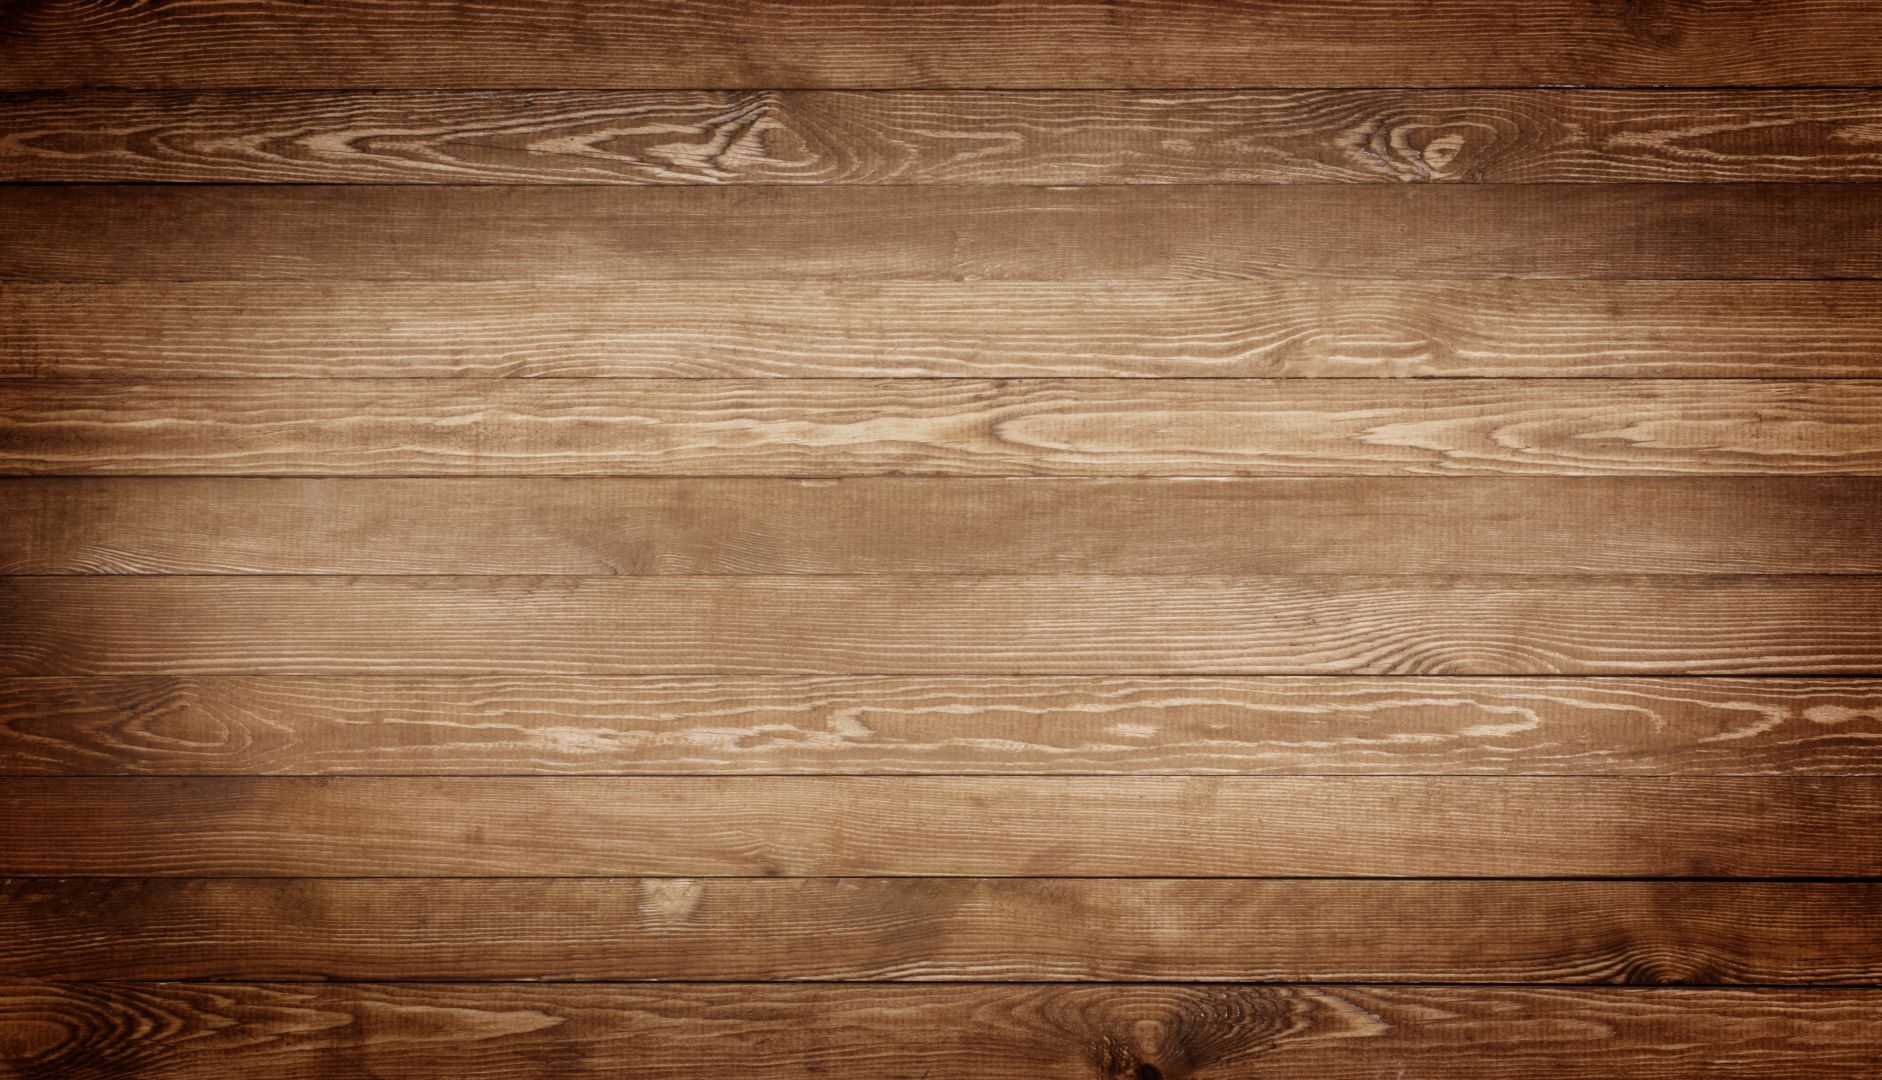 Poptávka na položení masivní dubové podlahy (Hotové výrobky) - Znojmo